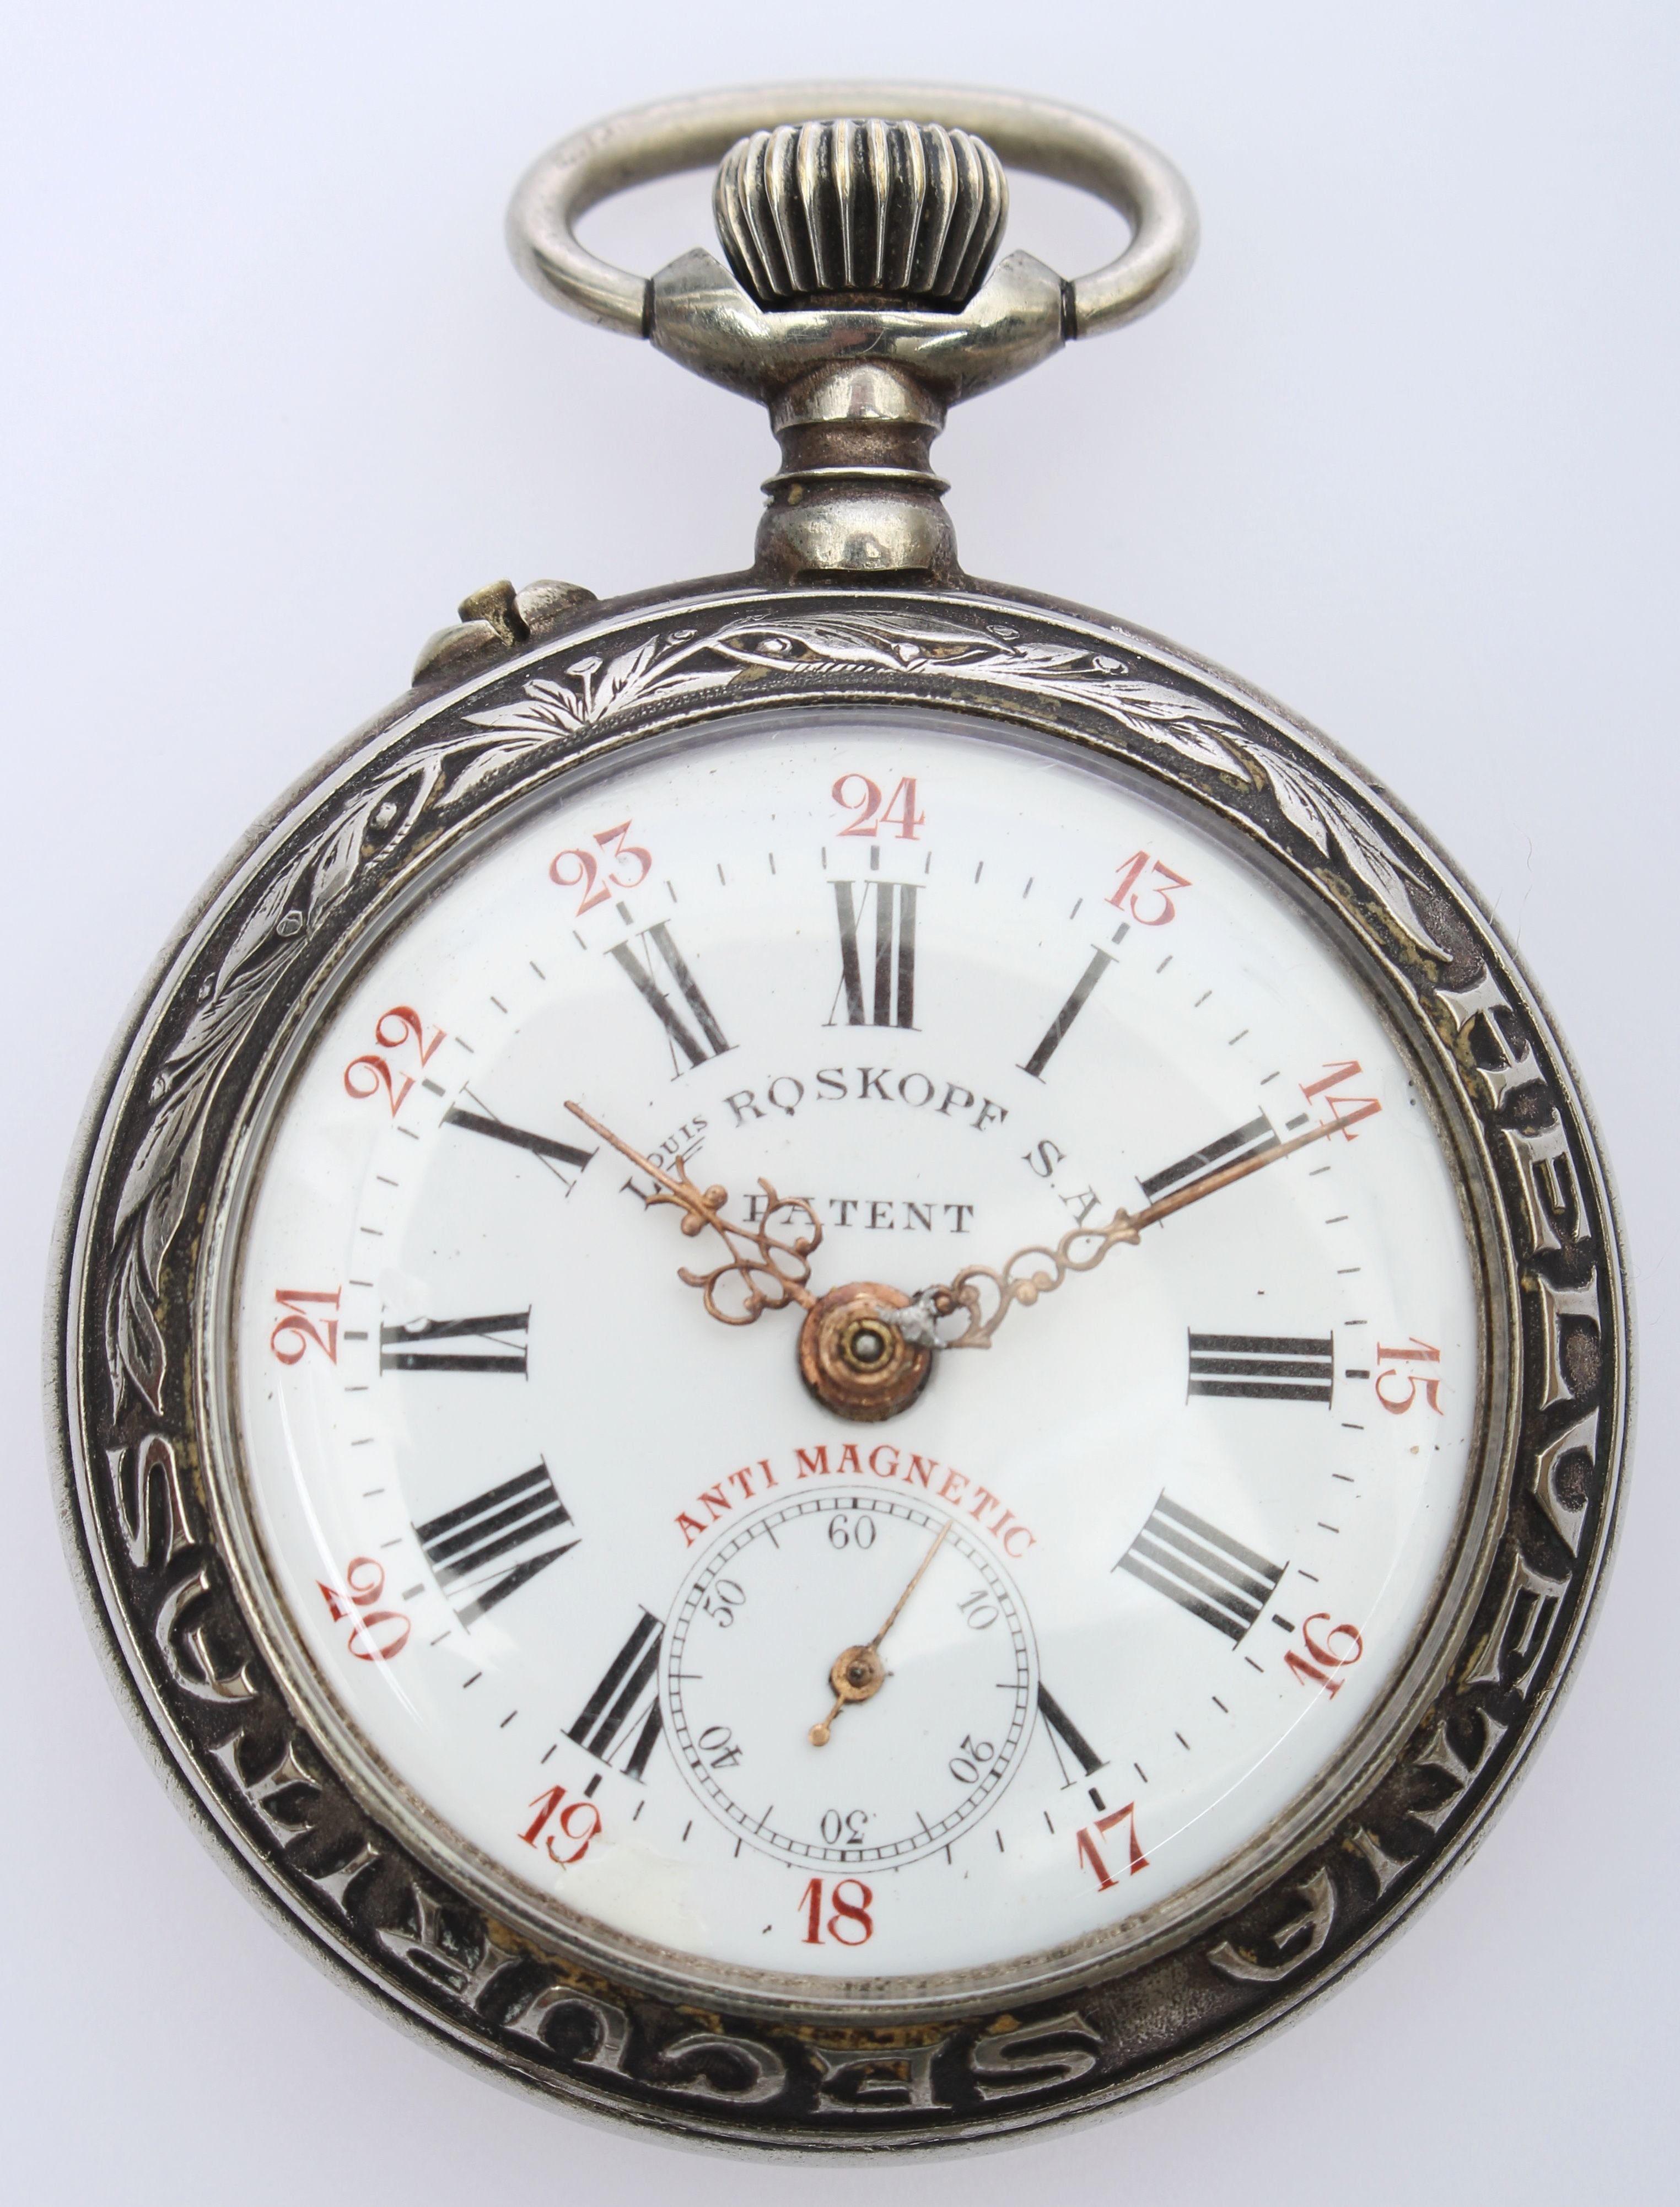 Kapesní pánské hodinky Roskopf S. A antimagnetic plasticky zdobené - parní vlak, obecný kov